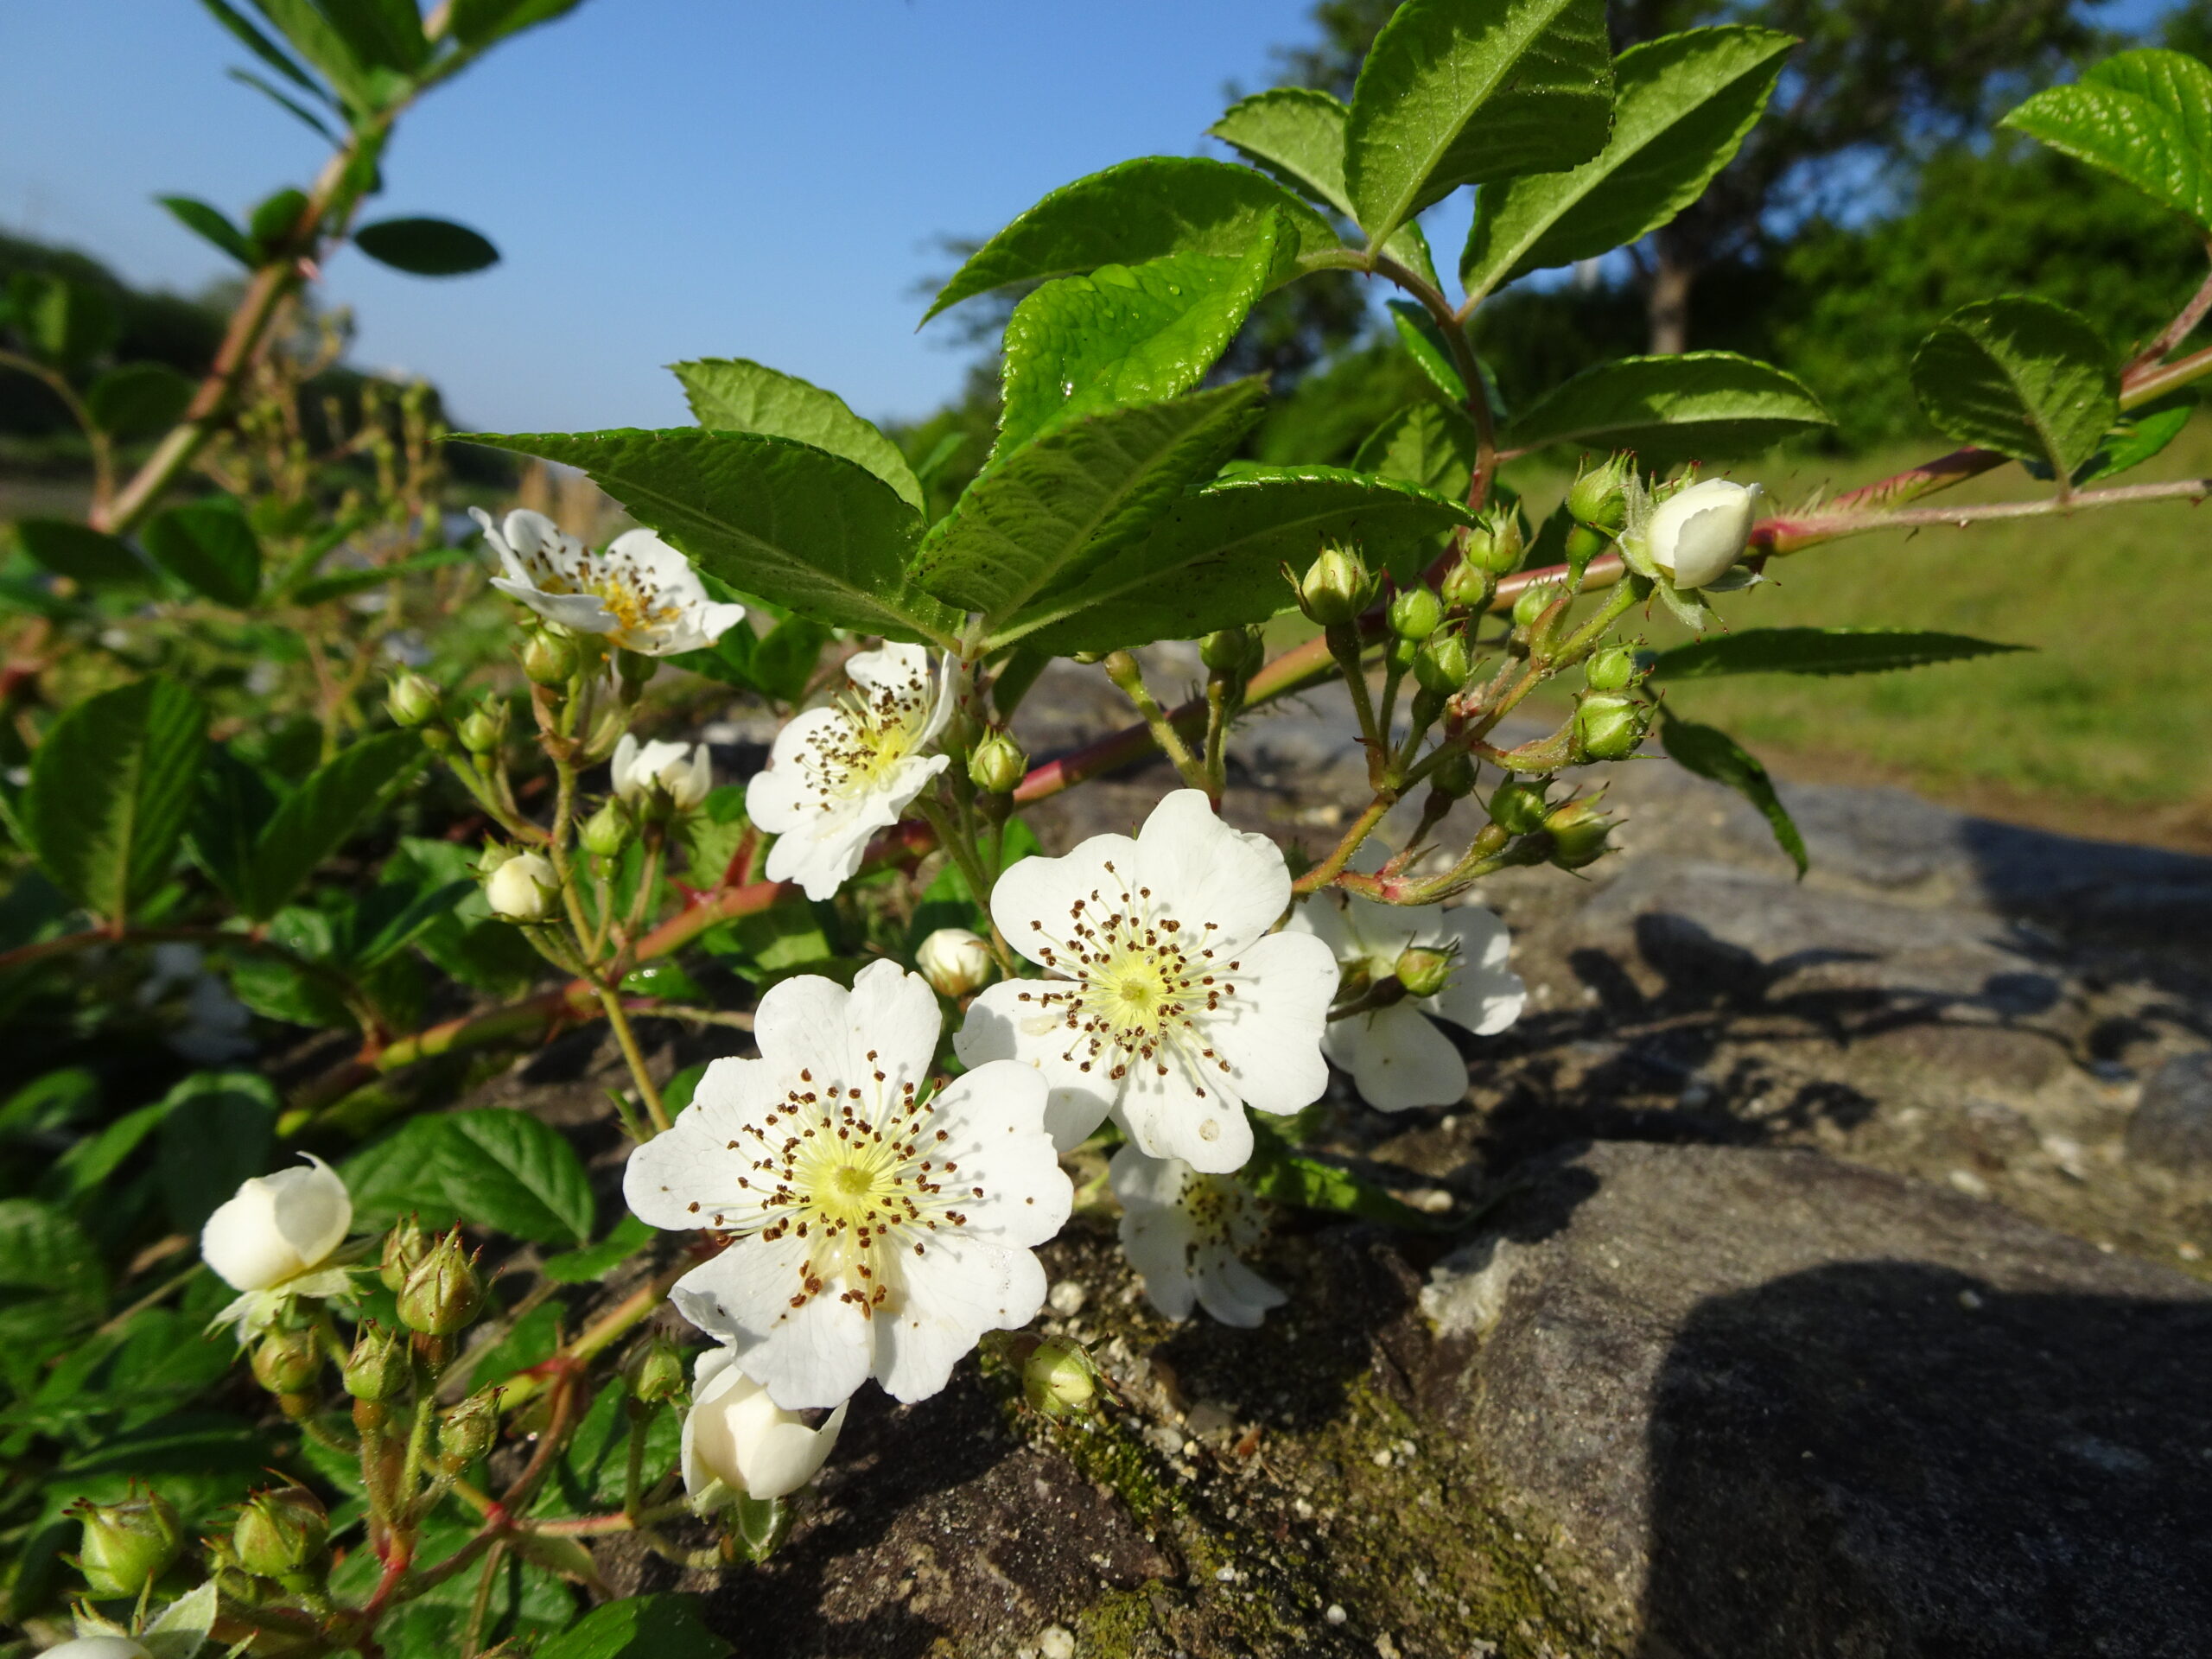 ノイバラ 「野ばら」とはこの植物。日本原産。世界の様々なバラの品種 